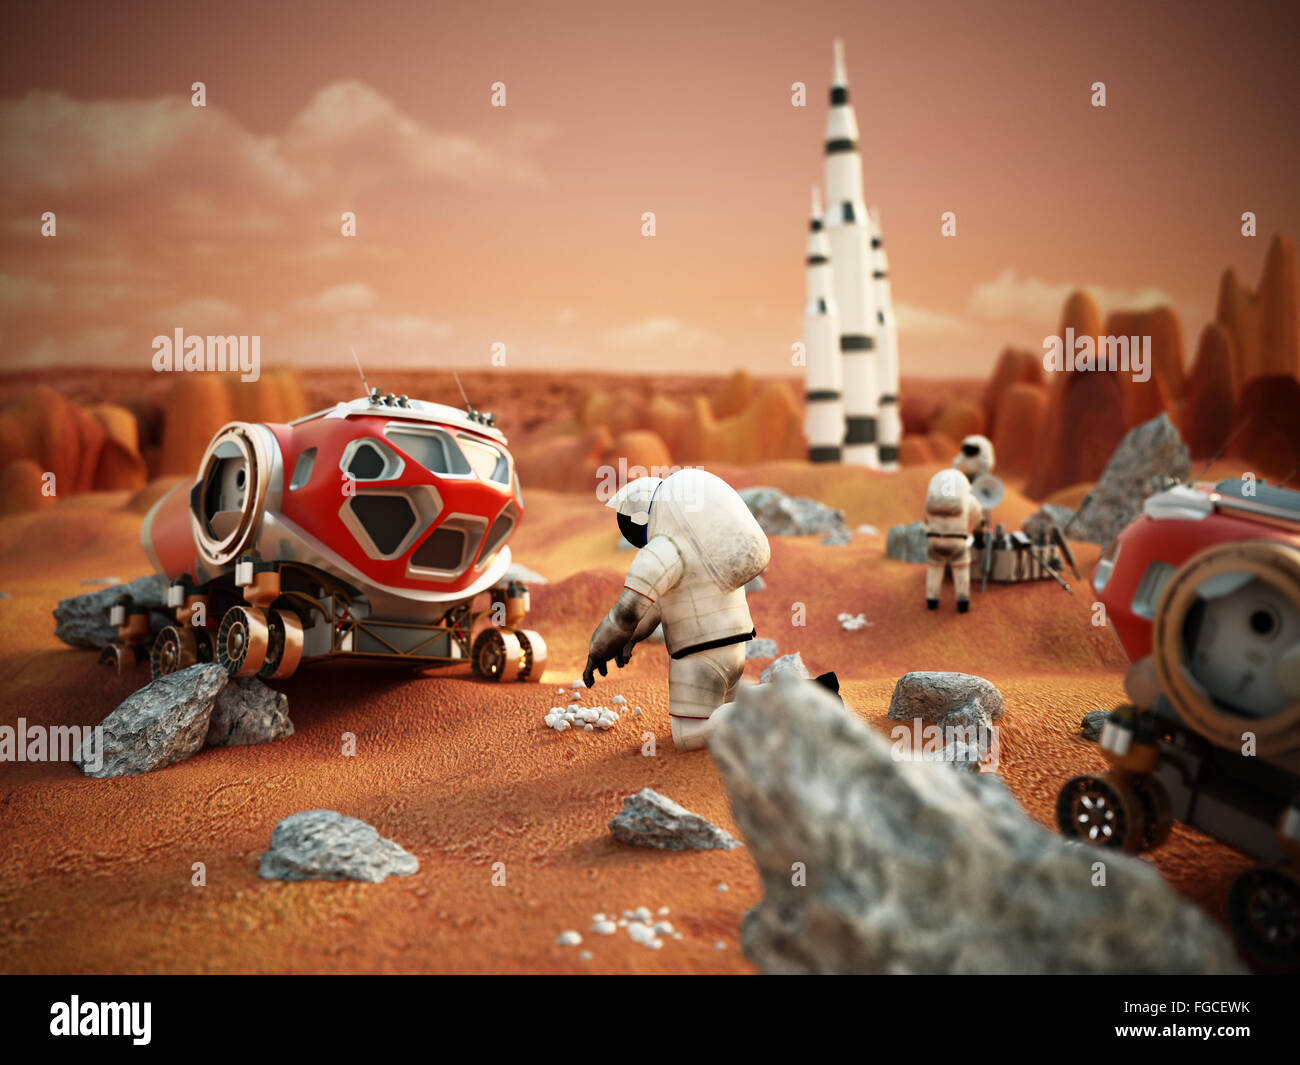 Scène fictive y compris les véhicules et les astronautes de la mission Mars habitée dépeint Banque D'Images